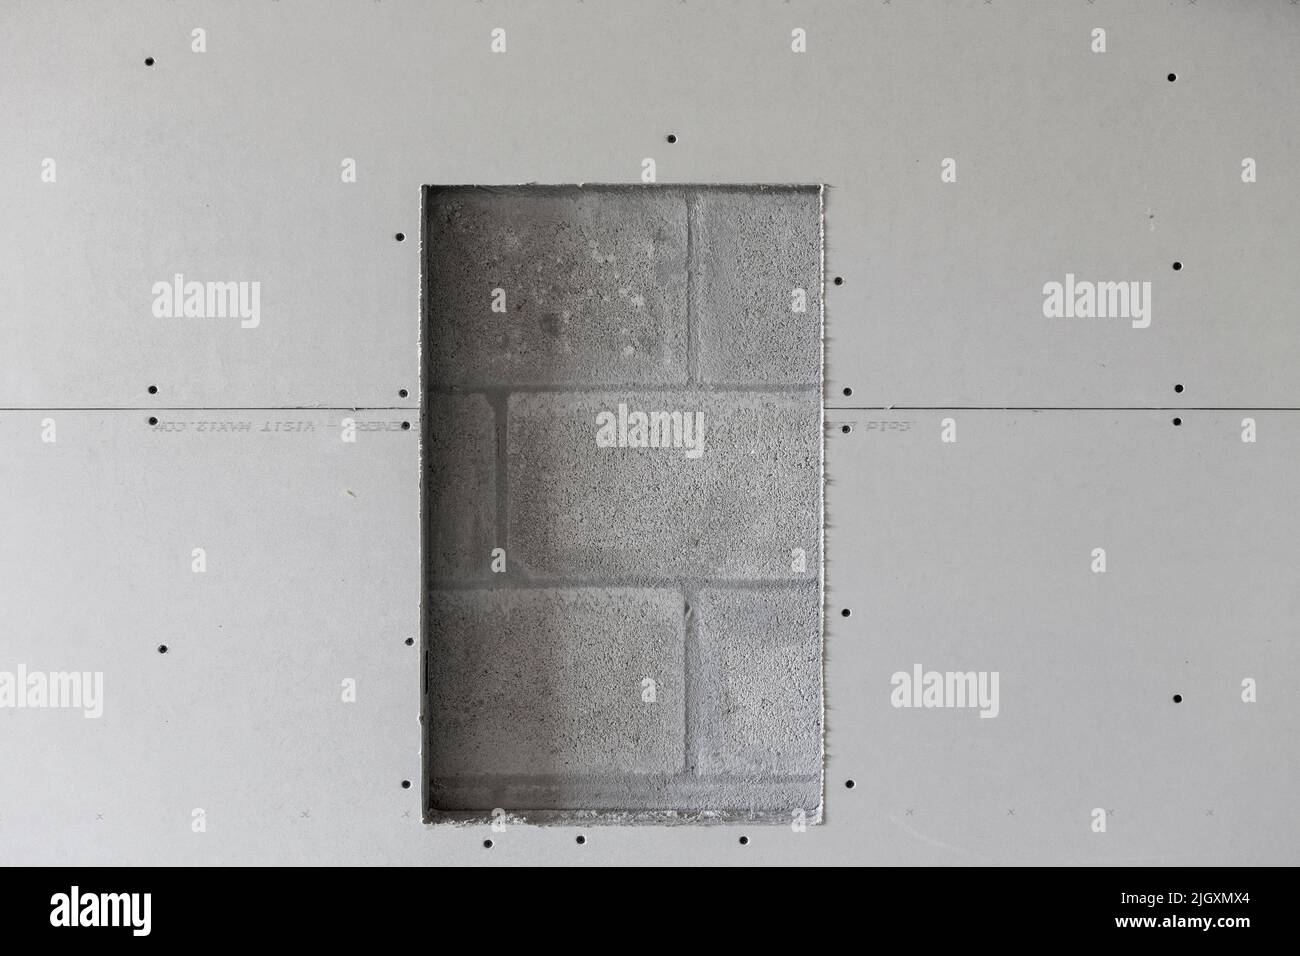 Trockenbauplatten, die auf Stahlstreben installiert sind, mit einer Öffnung für einen Feuerlöscher, die eine Betonblockwand freilegt. Stockfoto